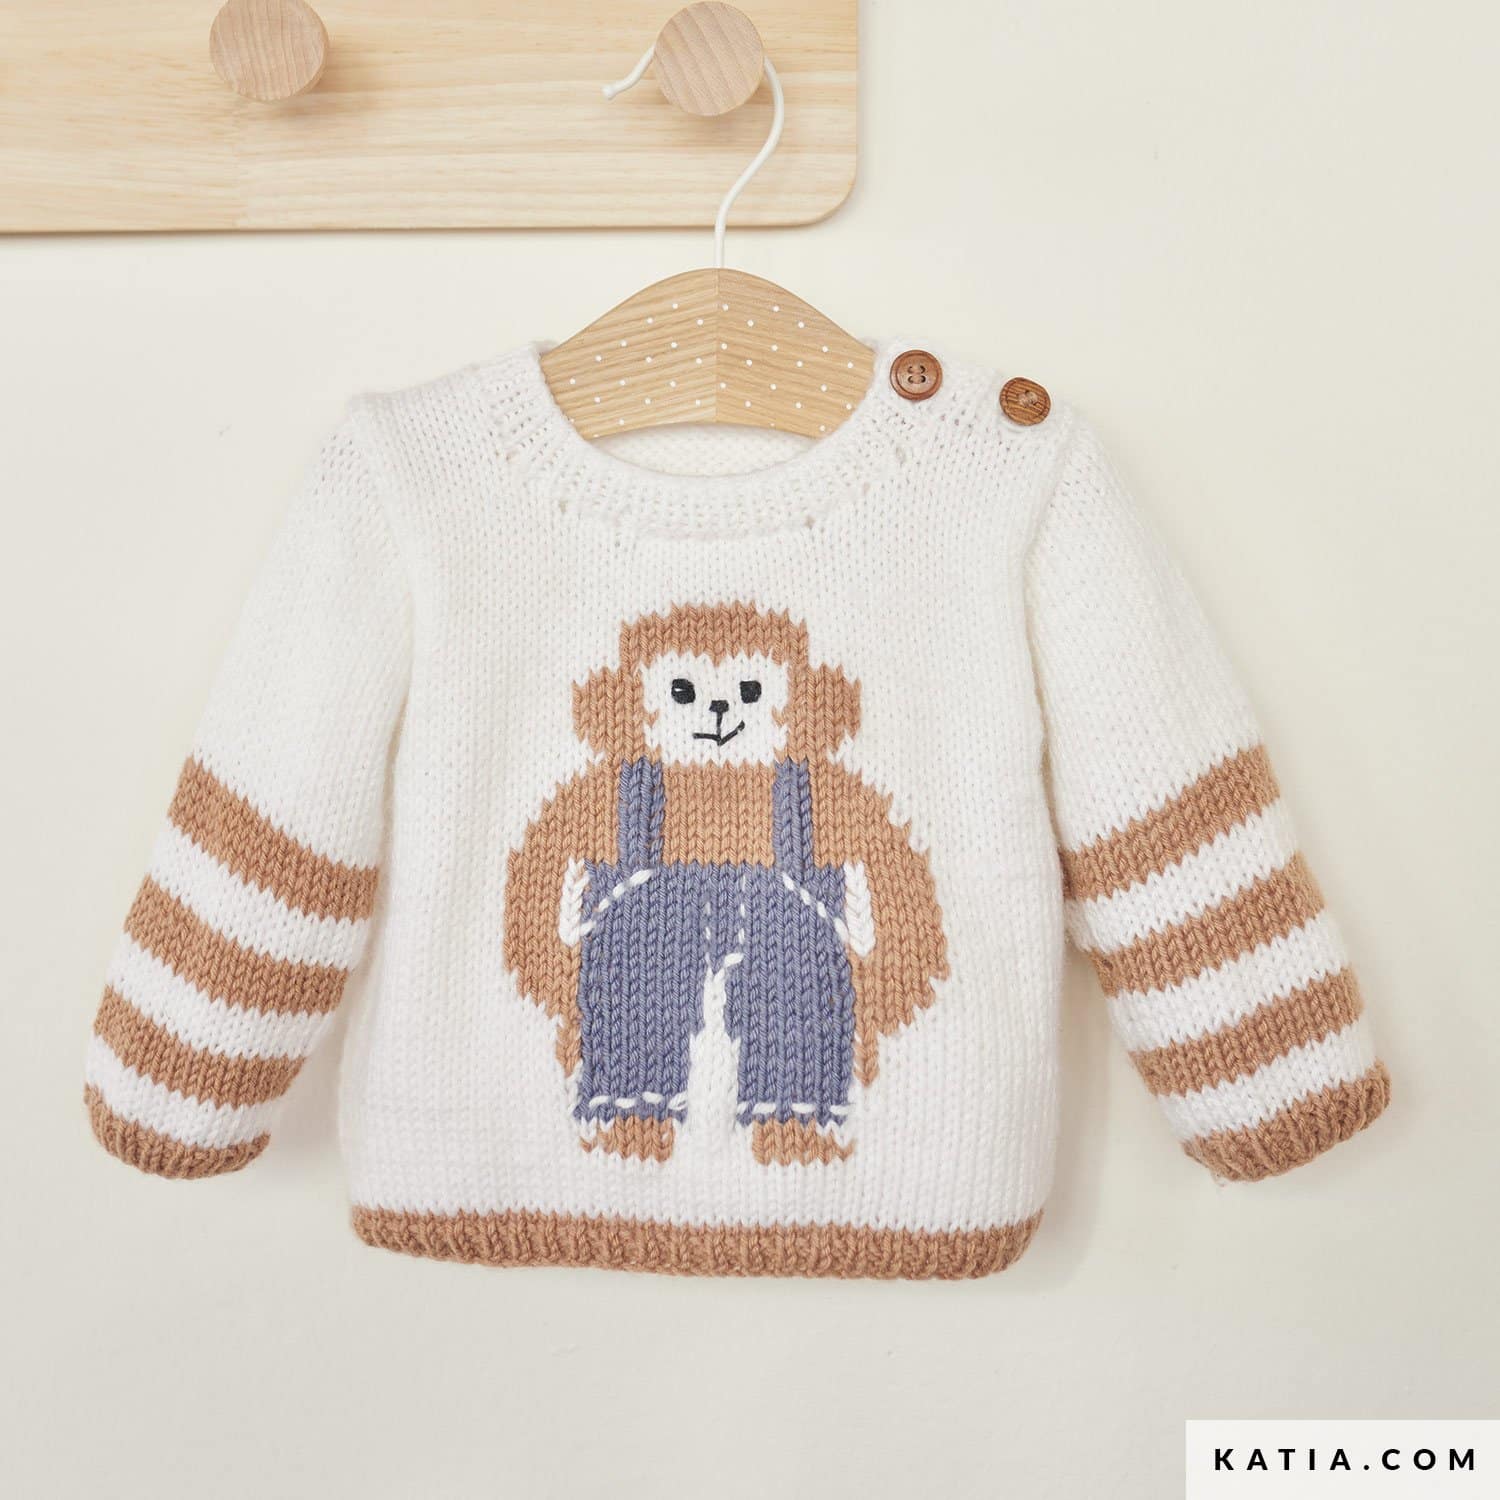 Découvrez 41 modèles layette à tricoter et crocheter cet hiver